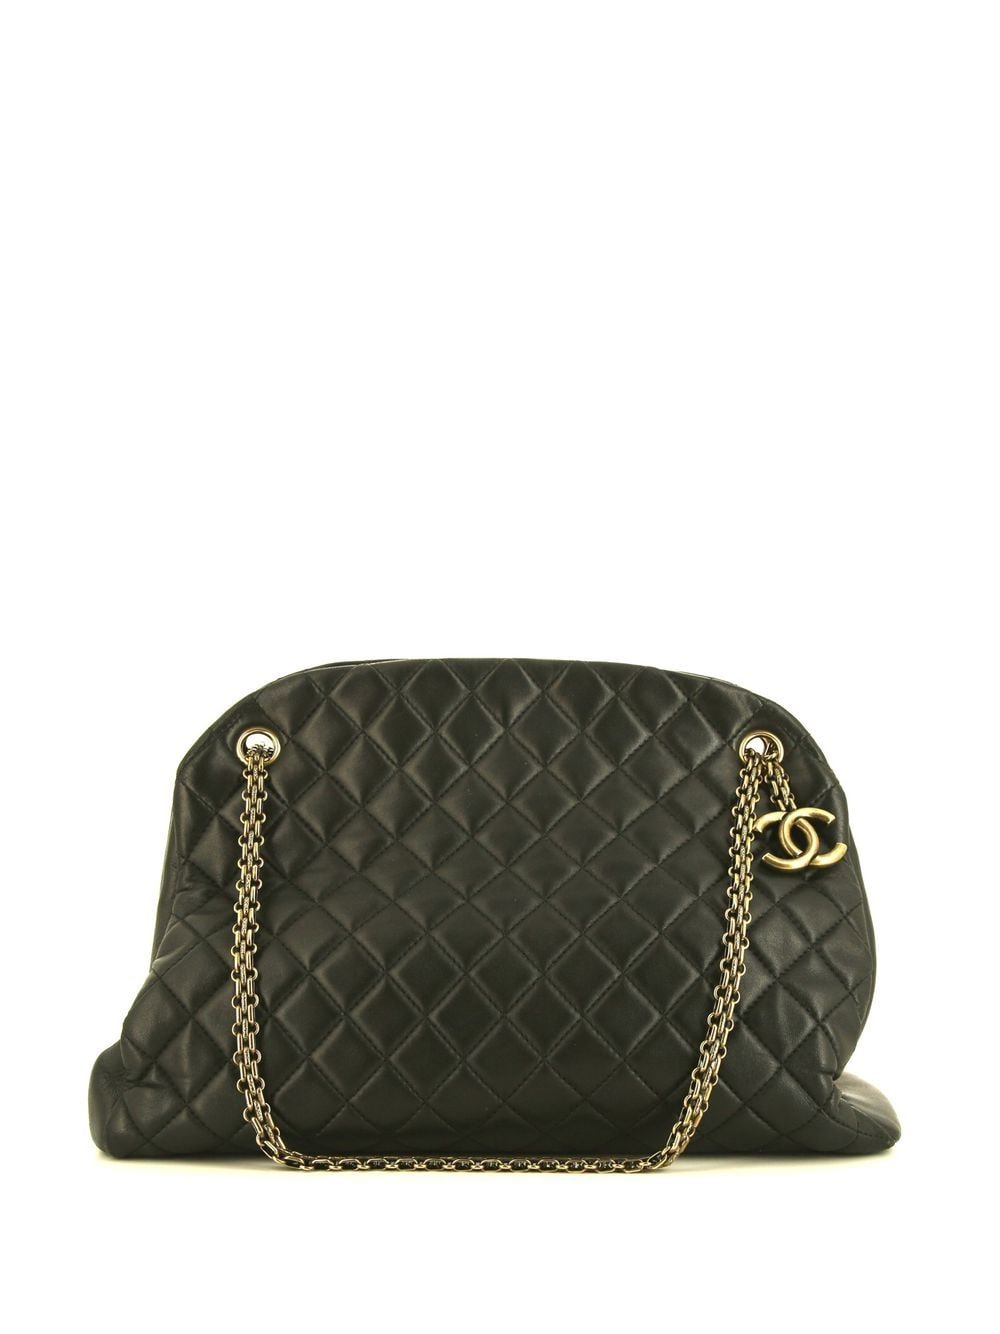 Pre-owned Chanel 2011 Large Mademoiselle Shoulder Bag In Black